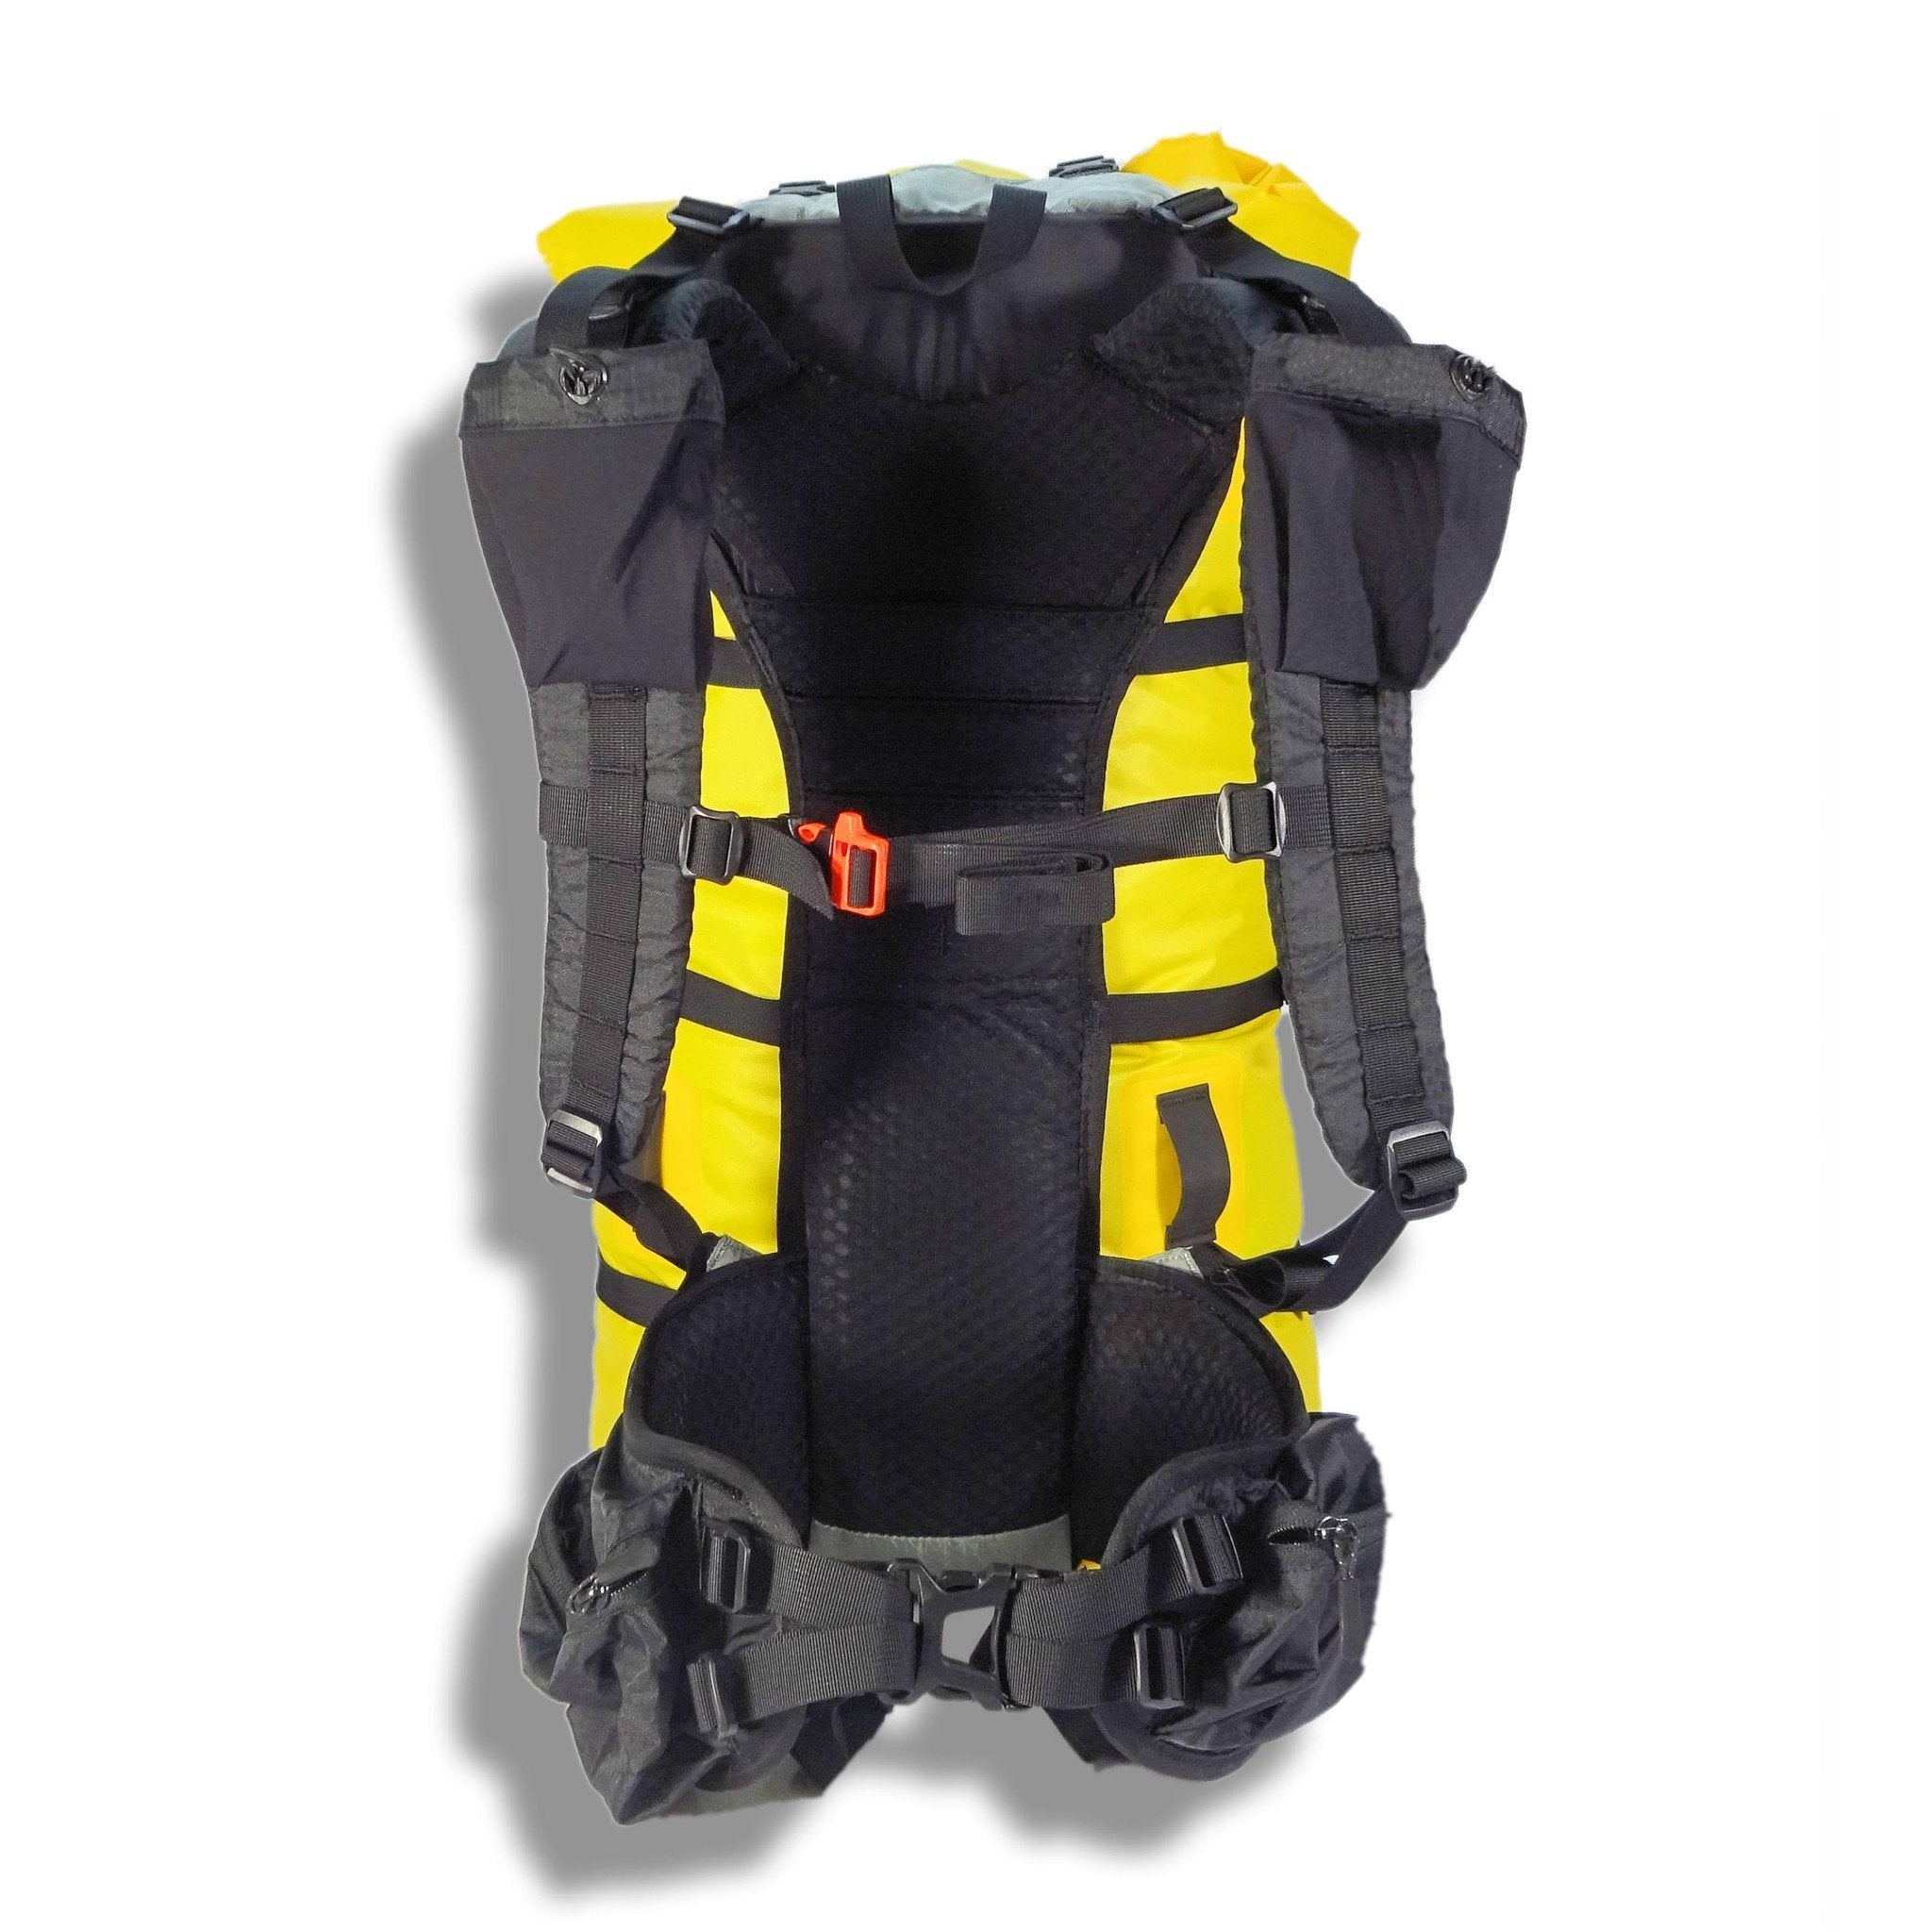 Flex Pack rear showing Shoulder straps and Hipbelt.